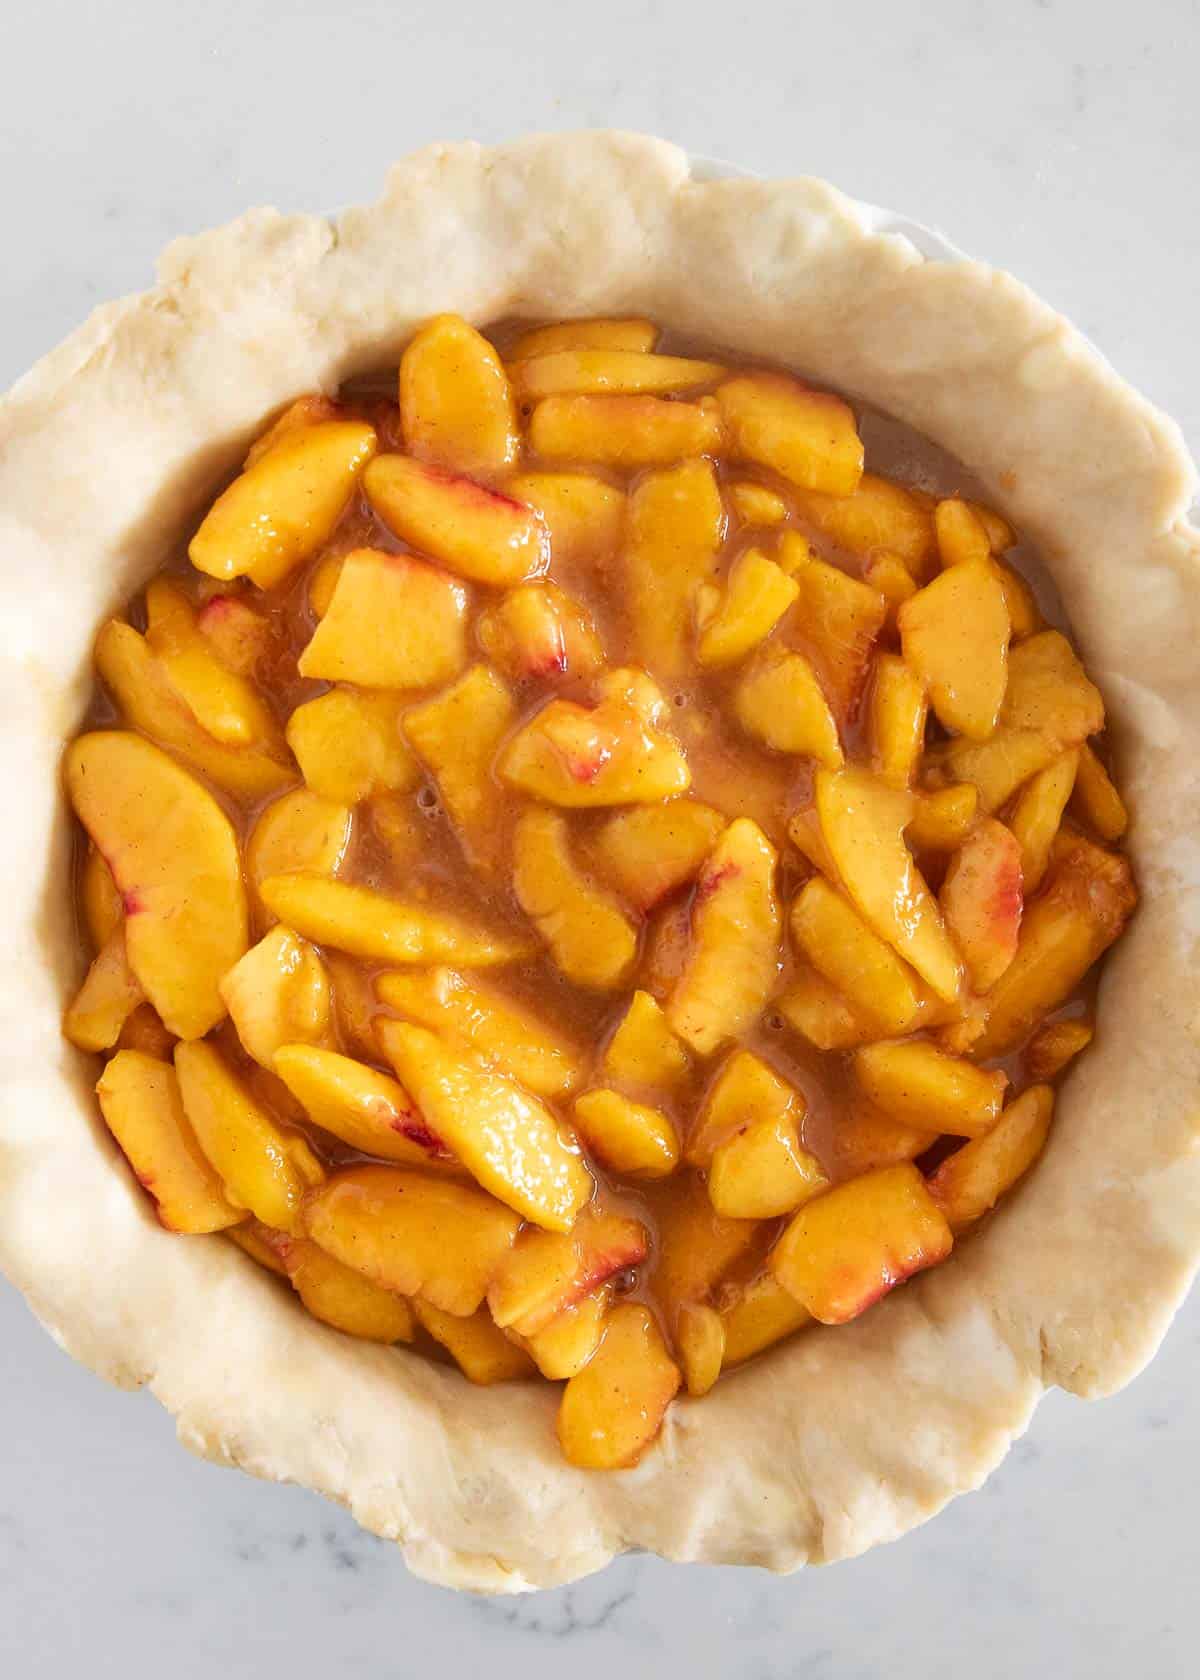 Peach pie filling in pie crust.